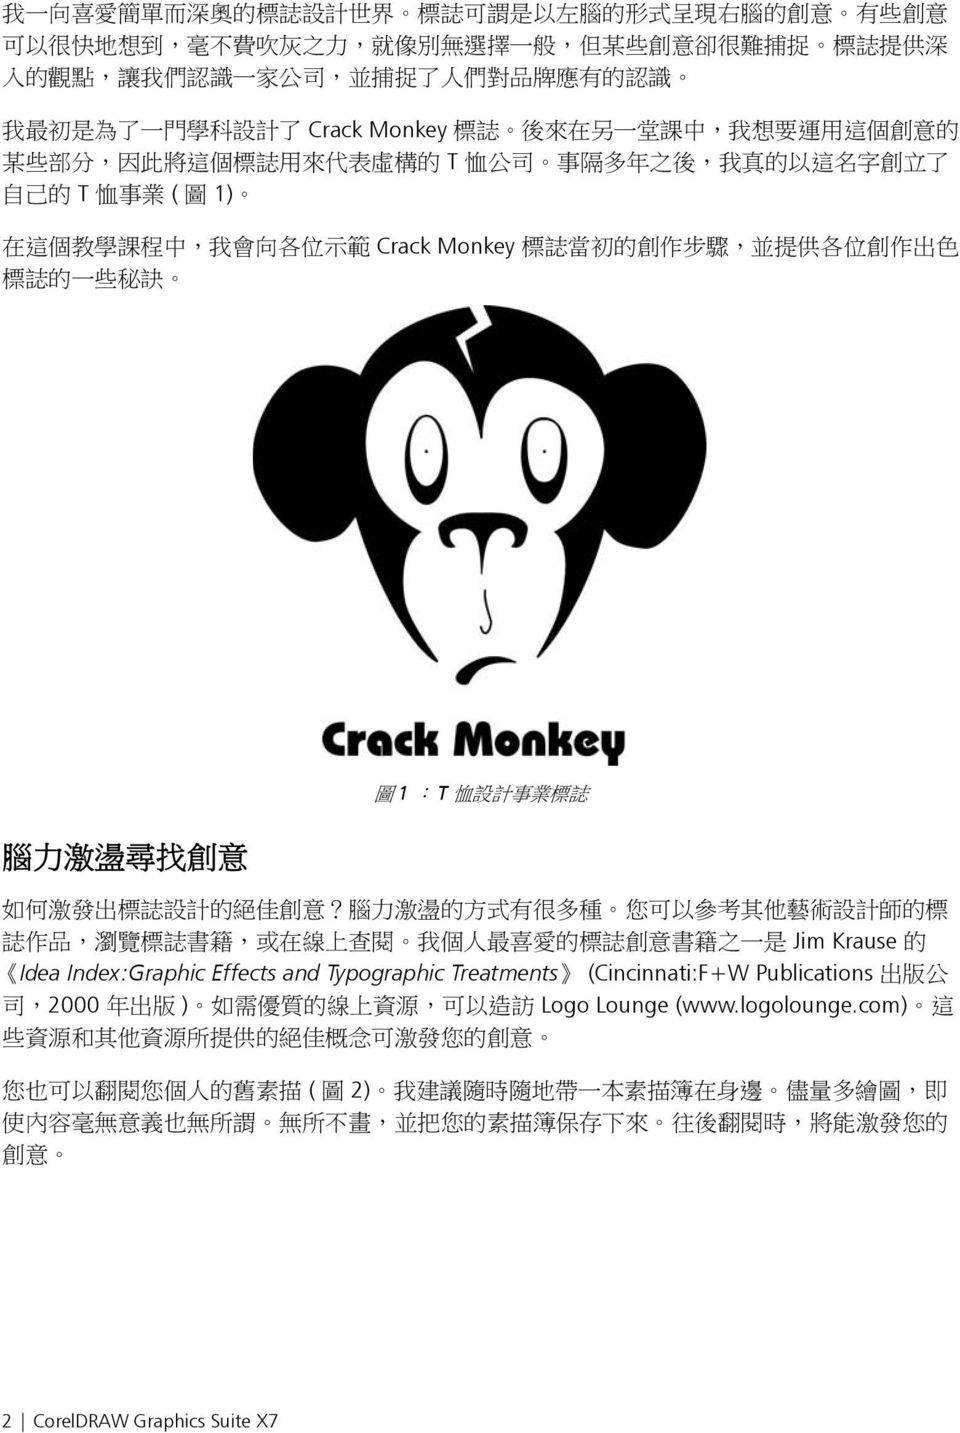 學 課 程 中, 我 會 向 各 位 示 範 Crack Monkey 標 誌 當 初 的 創 作 步 驟, 並 提 供 各 位 創 作 出 色 標 誌 的 一 些 秘 訣 腦 力 激 盪 尋 找 創 意 圖 1.. T 恤 設 計 事 業 標 誌 如 何 激 發 出 標 誌 設 計 的 絕 佳 創 意?